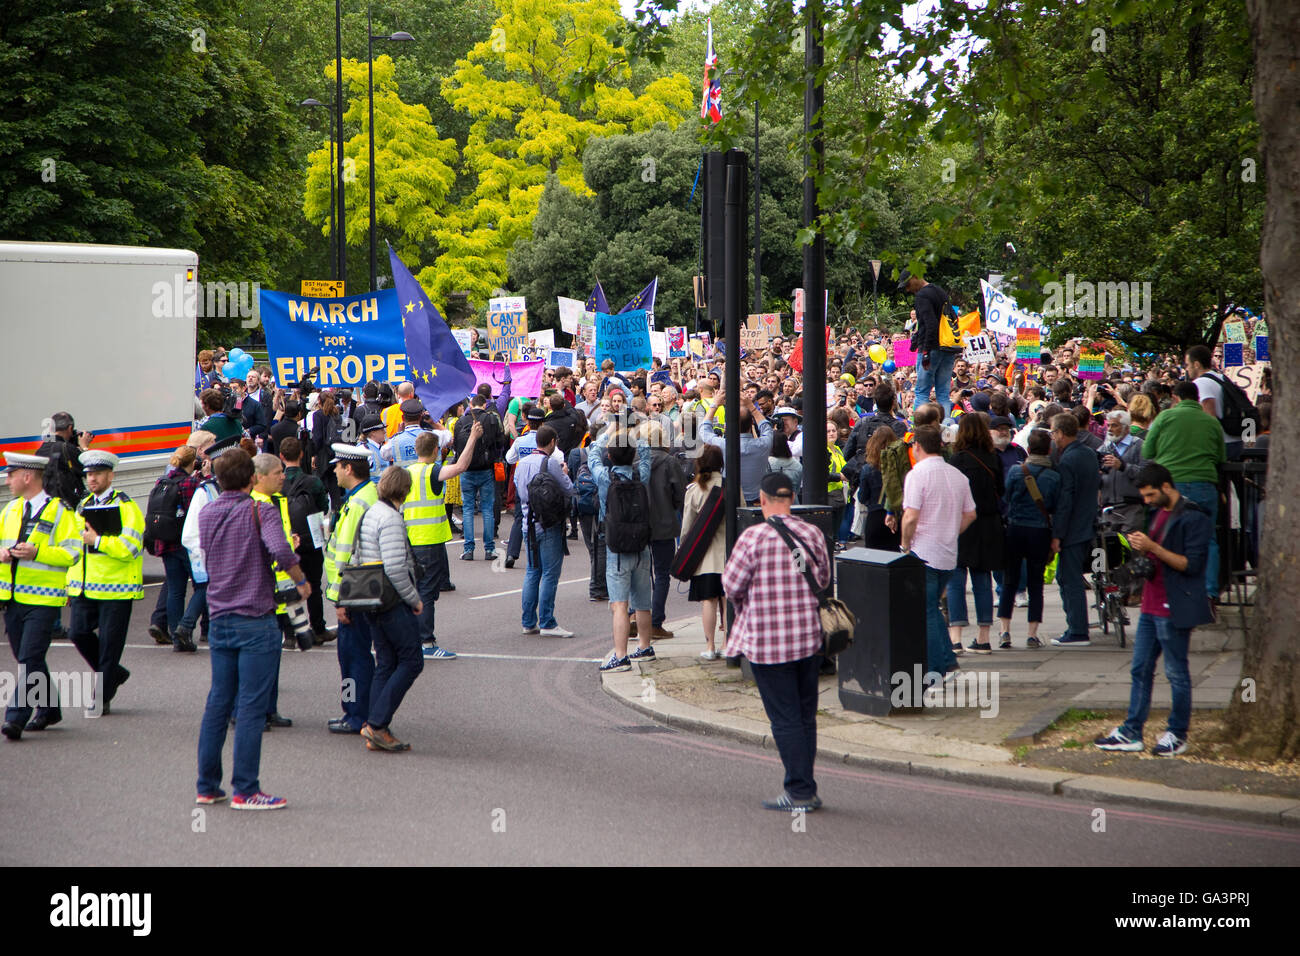 Londres - 02 de julio: los manifestantes en la marcha de protesta en Europa Julio 2nd, 2016 en Londres, Inglaterra, Reino Unido. Se estima que 35 tú Foto de stock